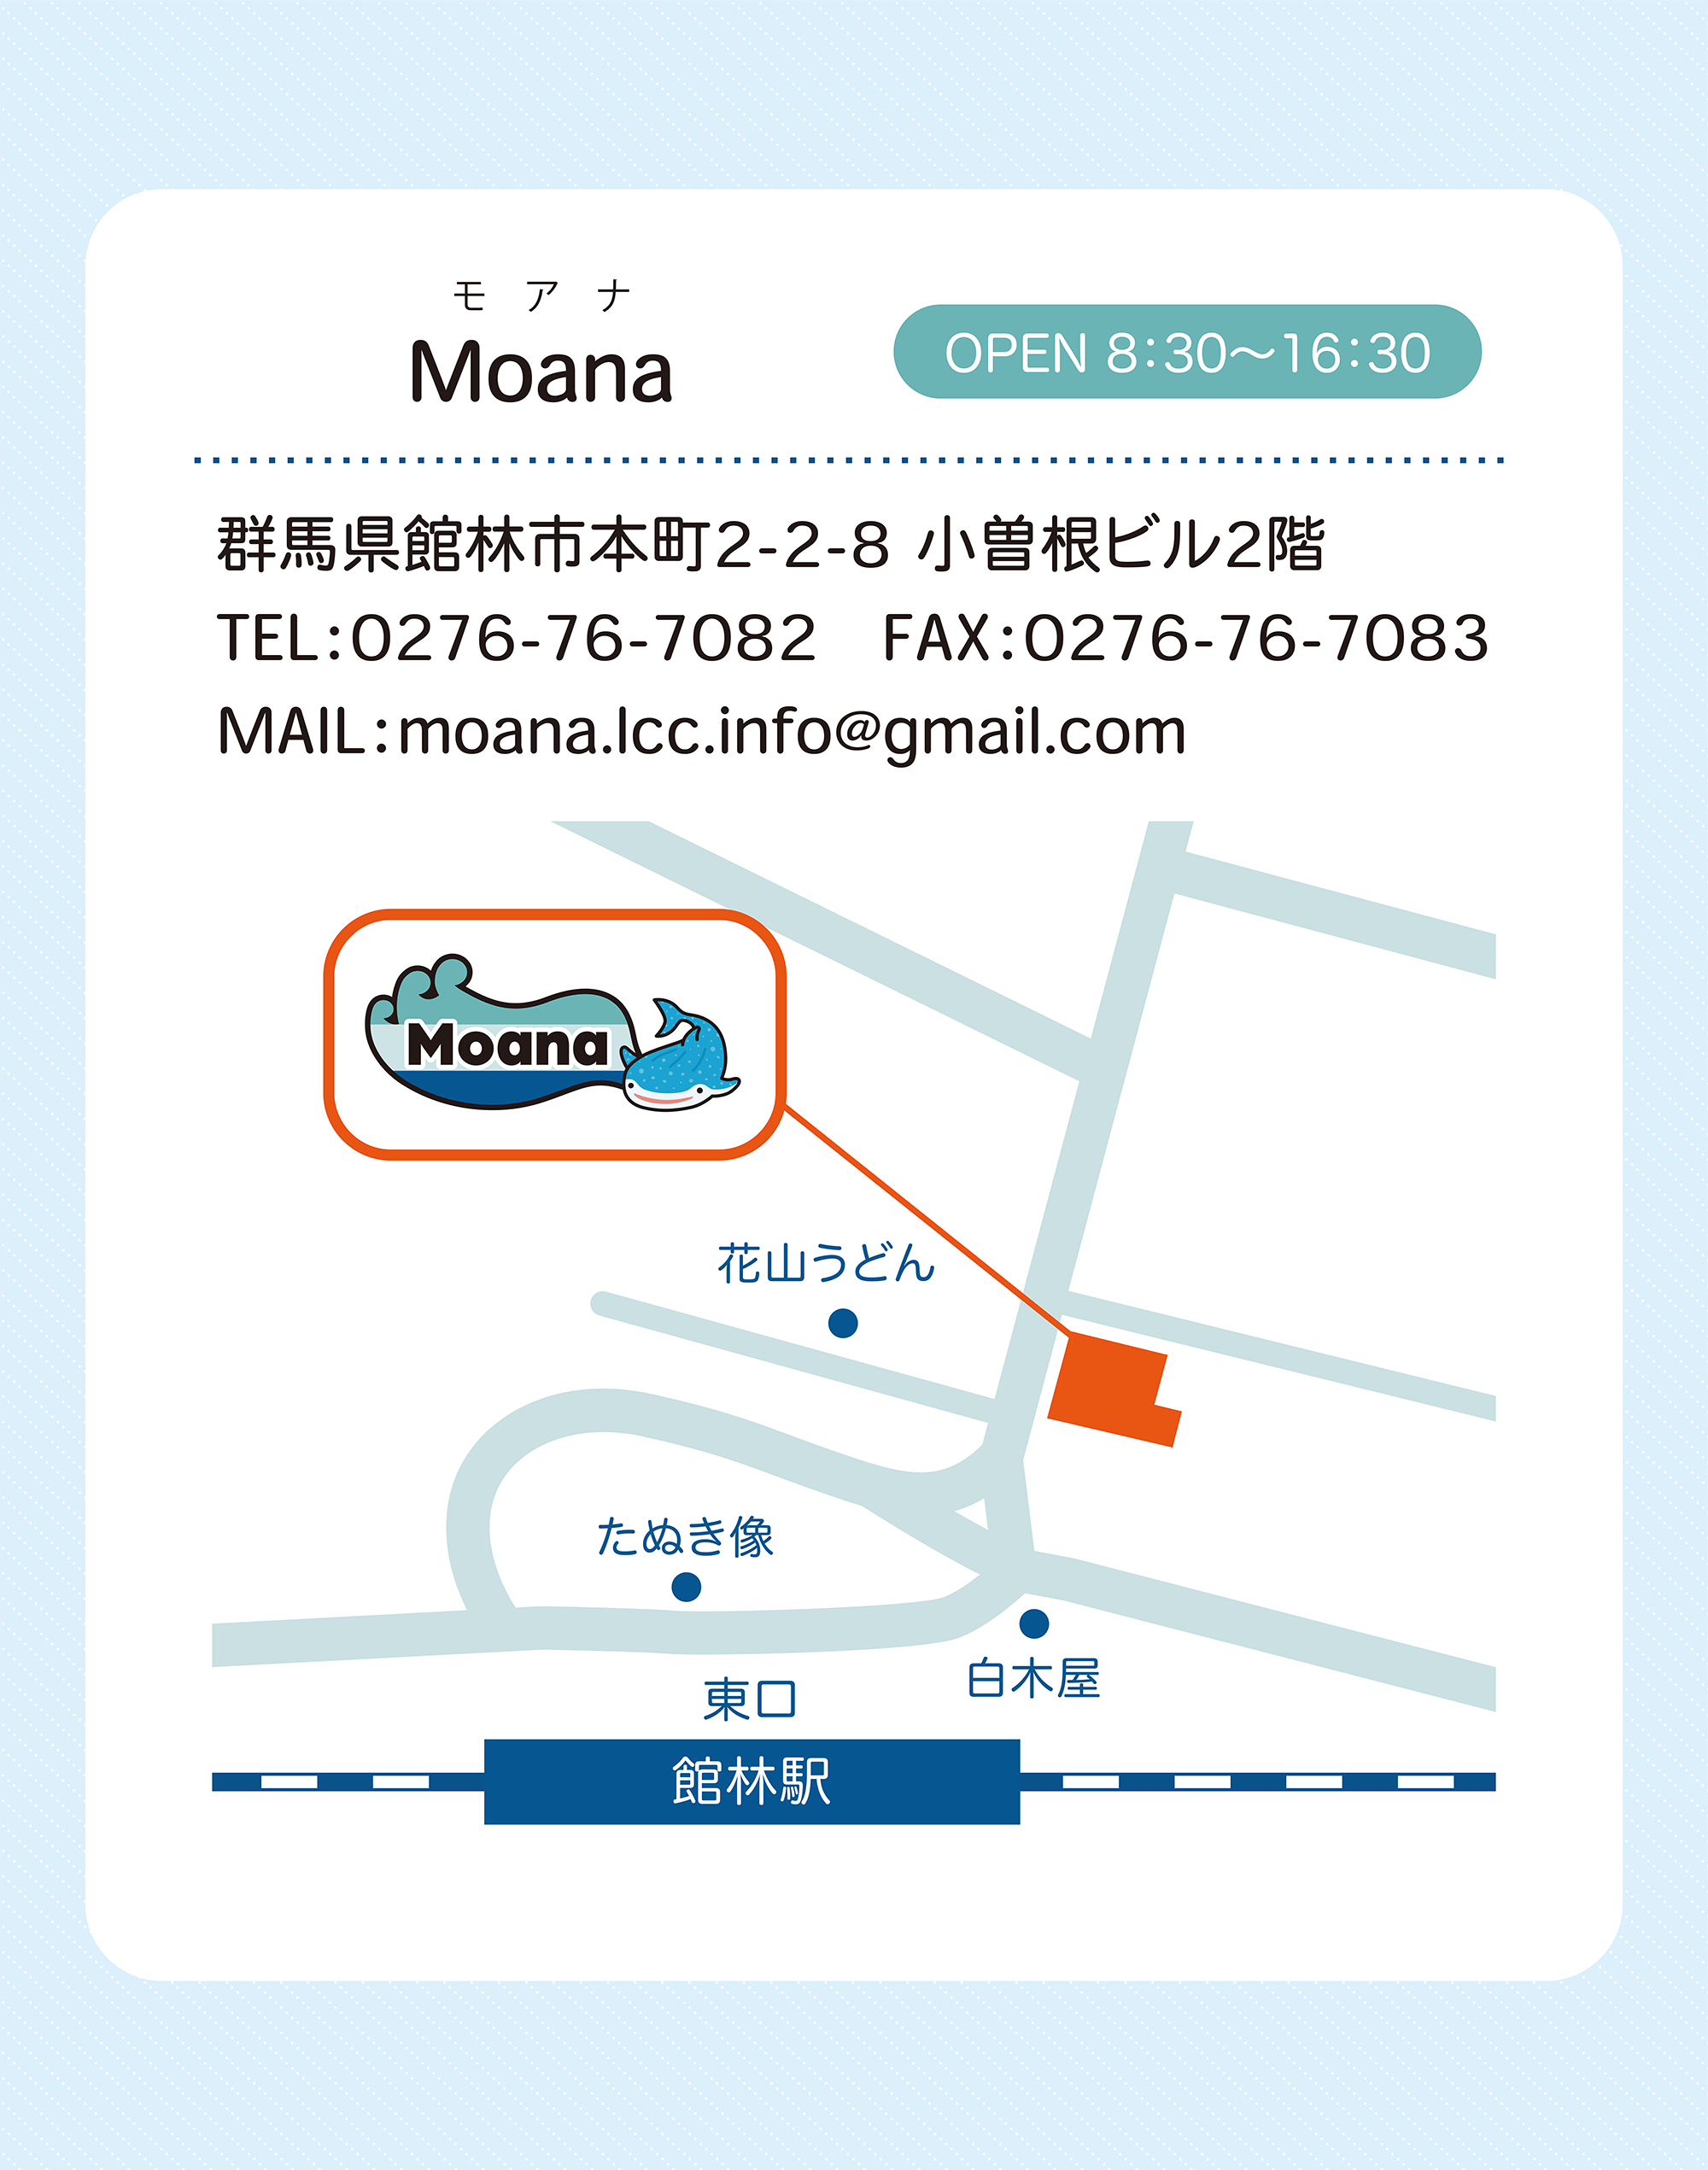 Moana事業所紹介